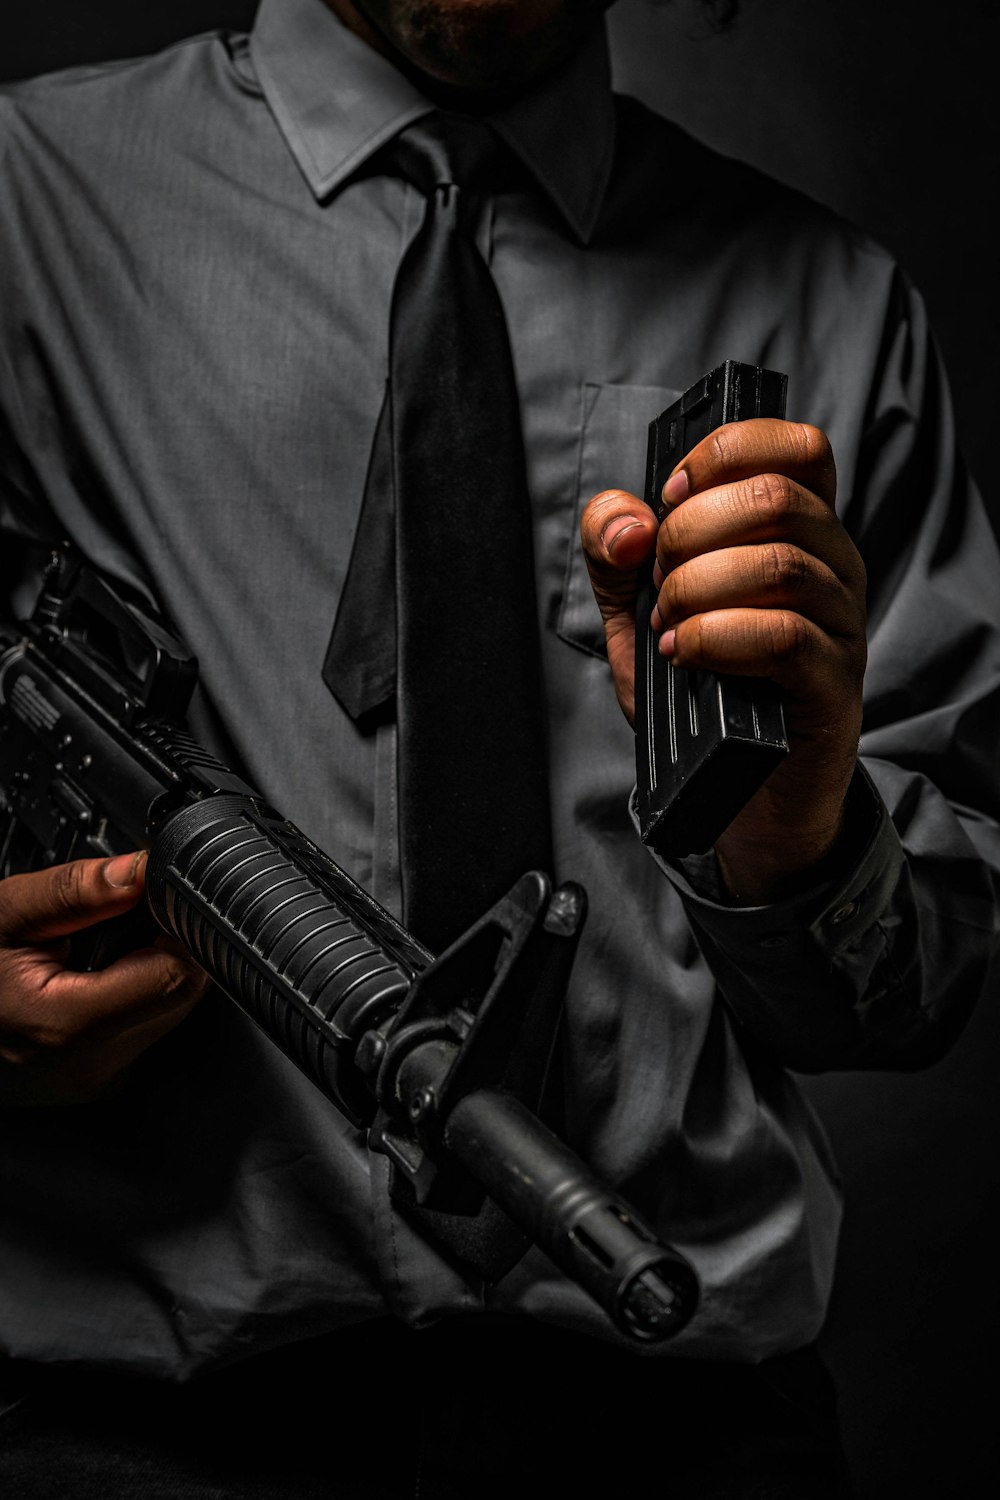 Mann in schwarzer Lederjacke mit schwarzem Gewehr